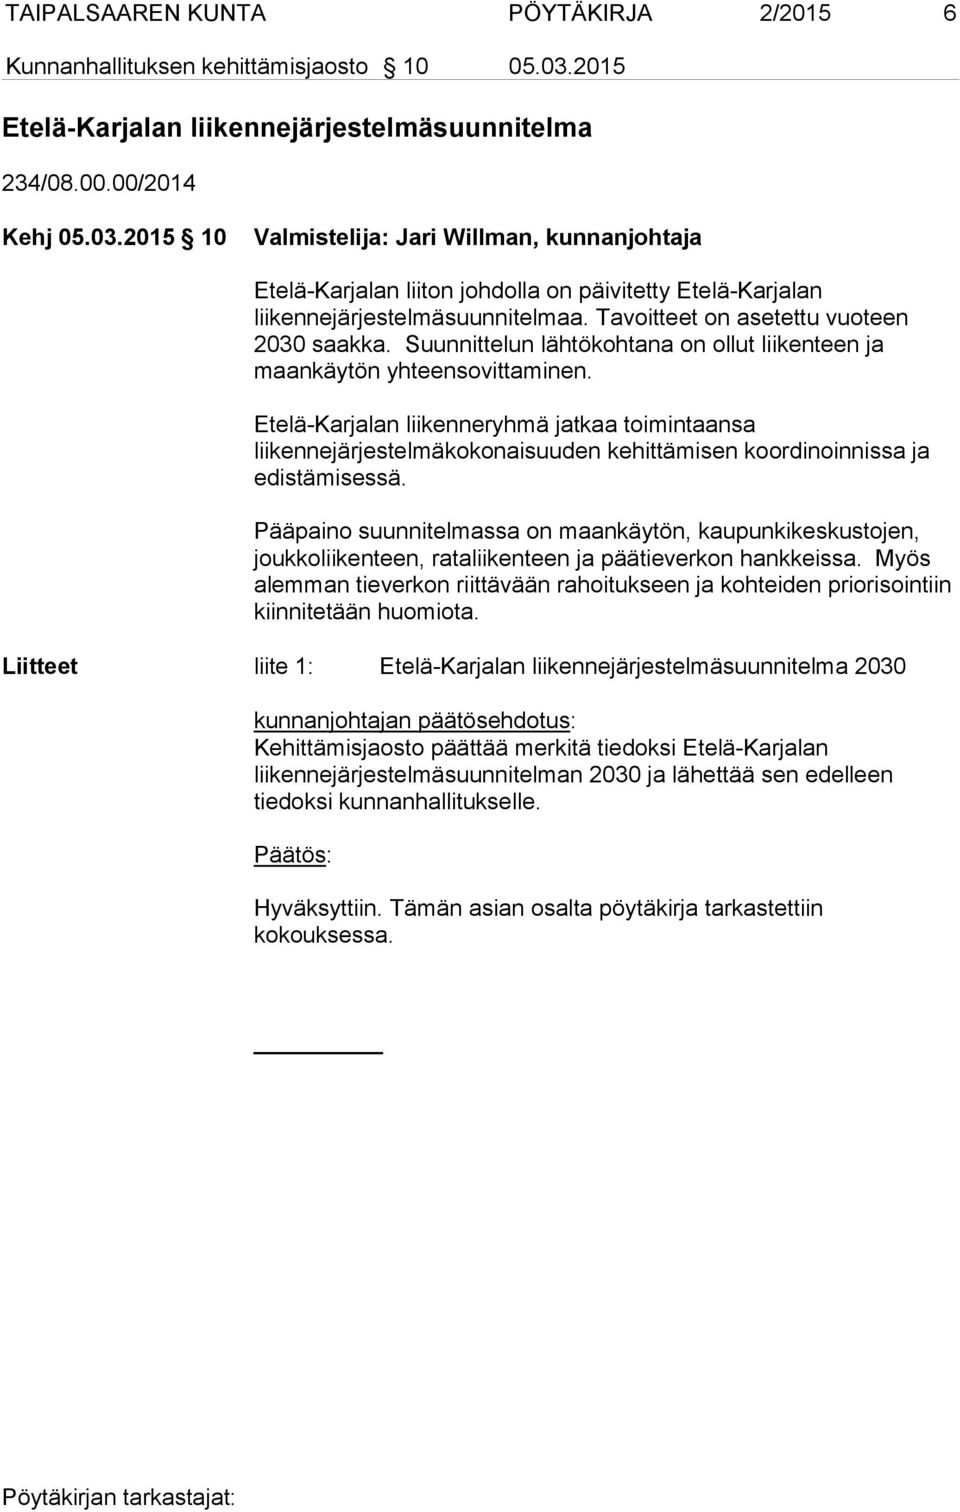 2015 10 Valmistelija: Jari Willman, kunnanjohtaja Etelä-Karjalan liiton johdolla on päivitetty Etelä-Karjalan liikennejärjestelmäsuunnitelmaa. Tavoitteet on asetettu vuoteen 2030 saakka.